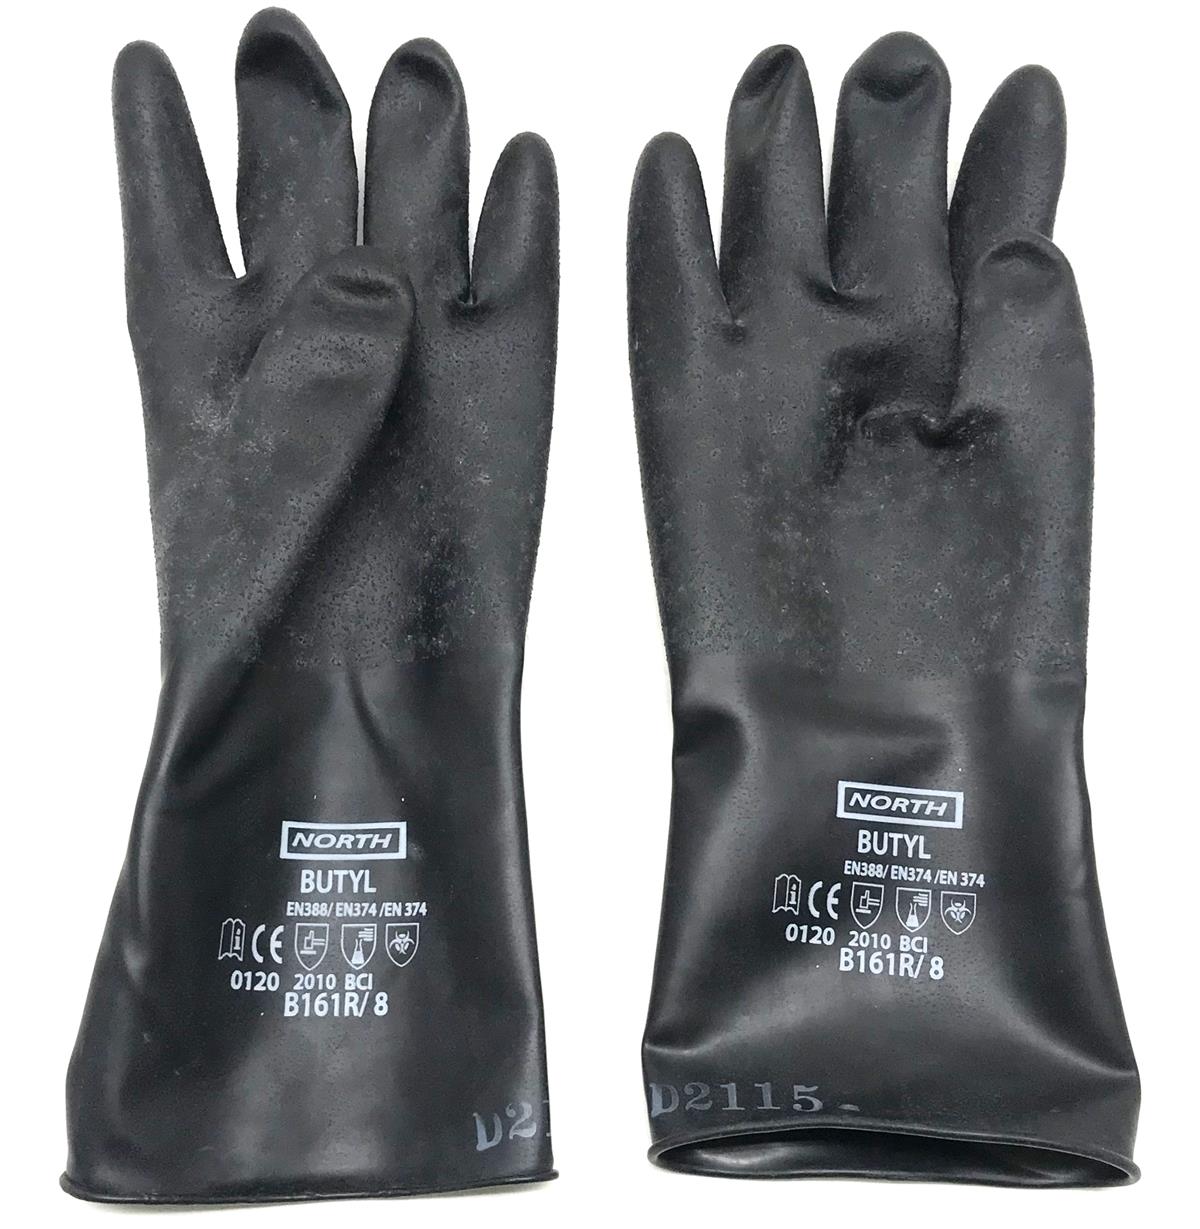 SP-2335 | Special Hazmat Equipment Gloves (4).jpg